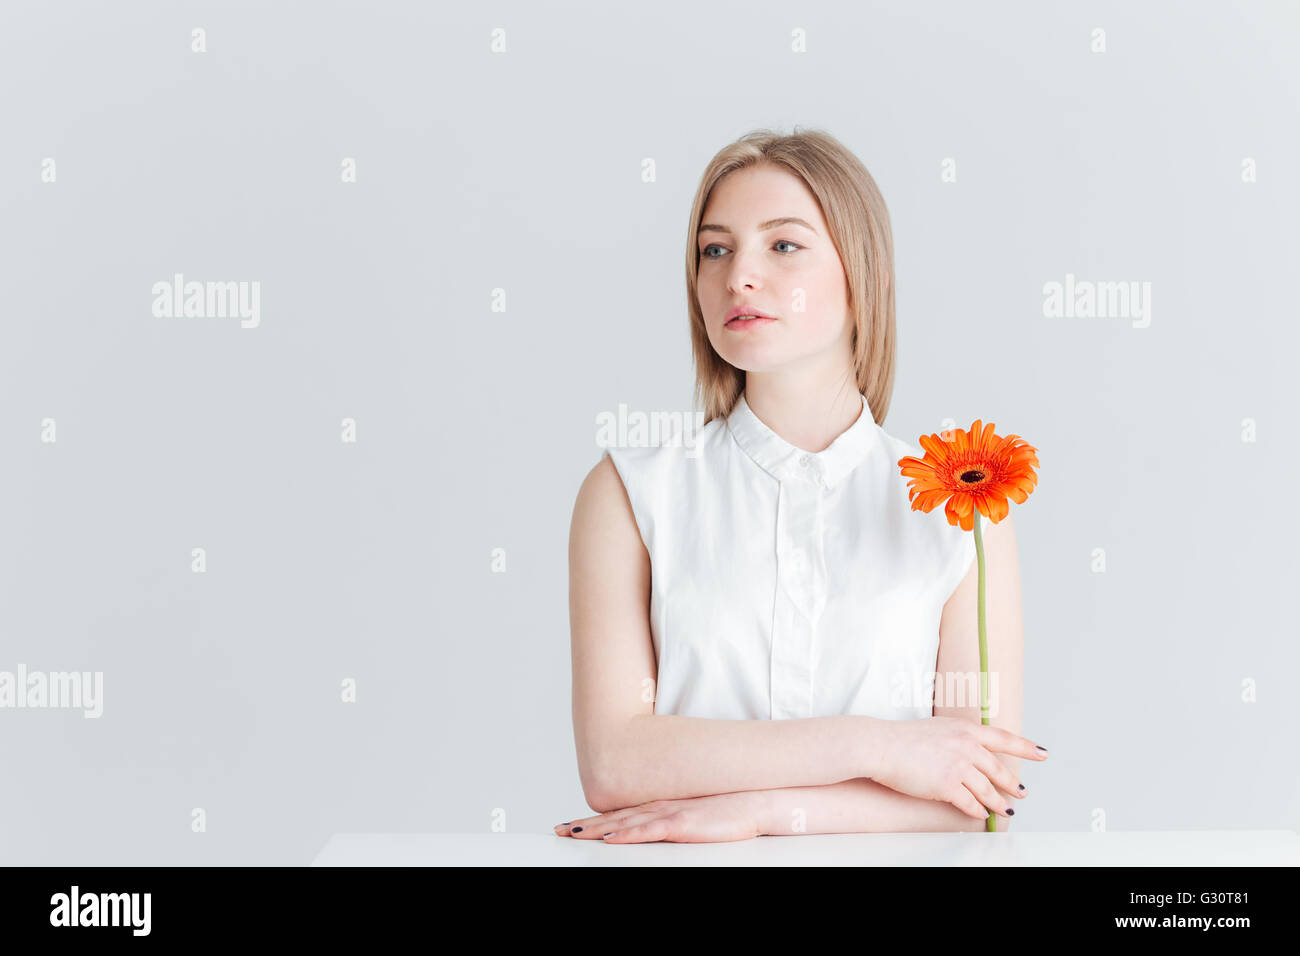 Charmante femme assise à la table et holding flower isolé sur fond blanc Banque D'Images